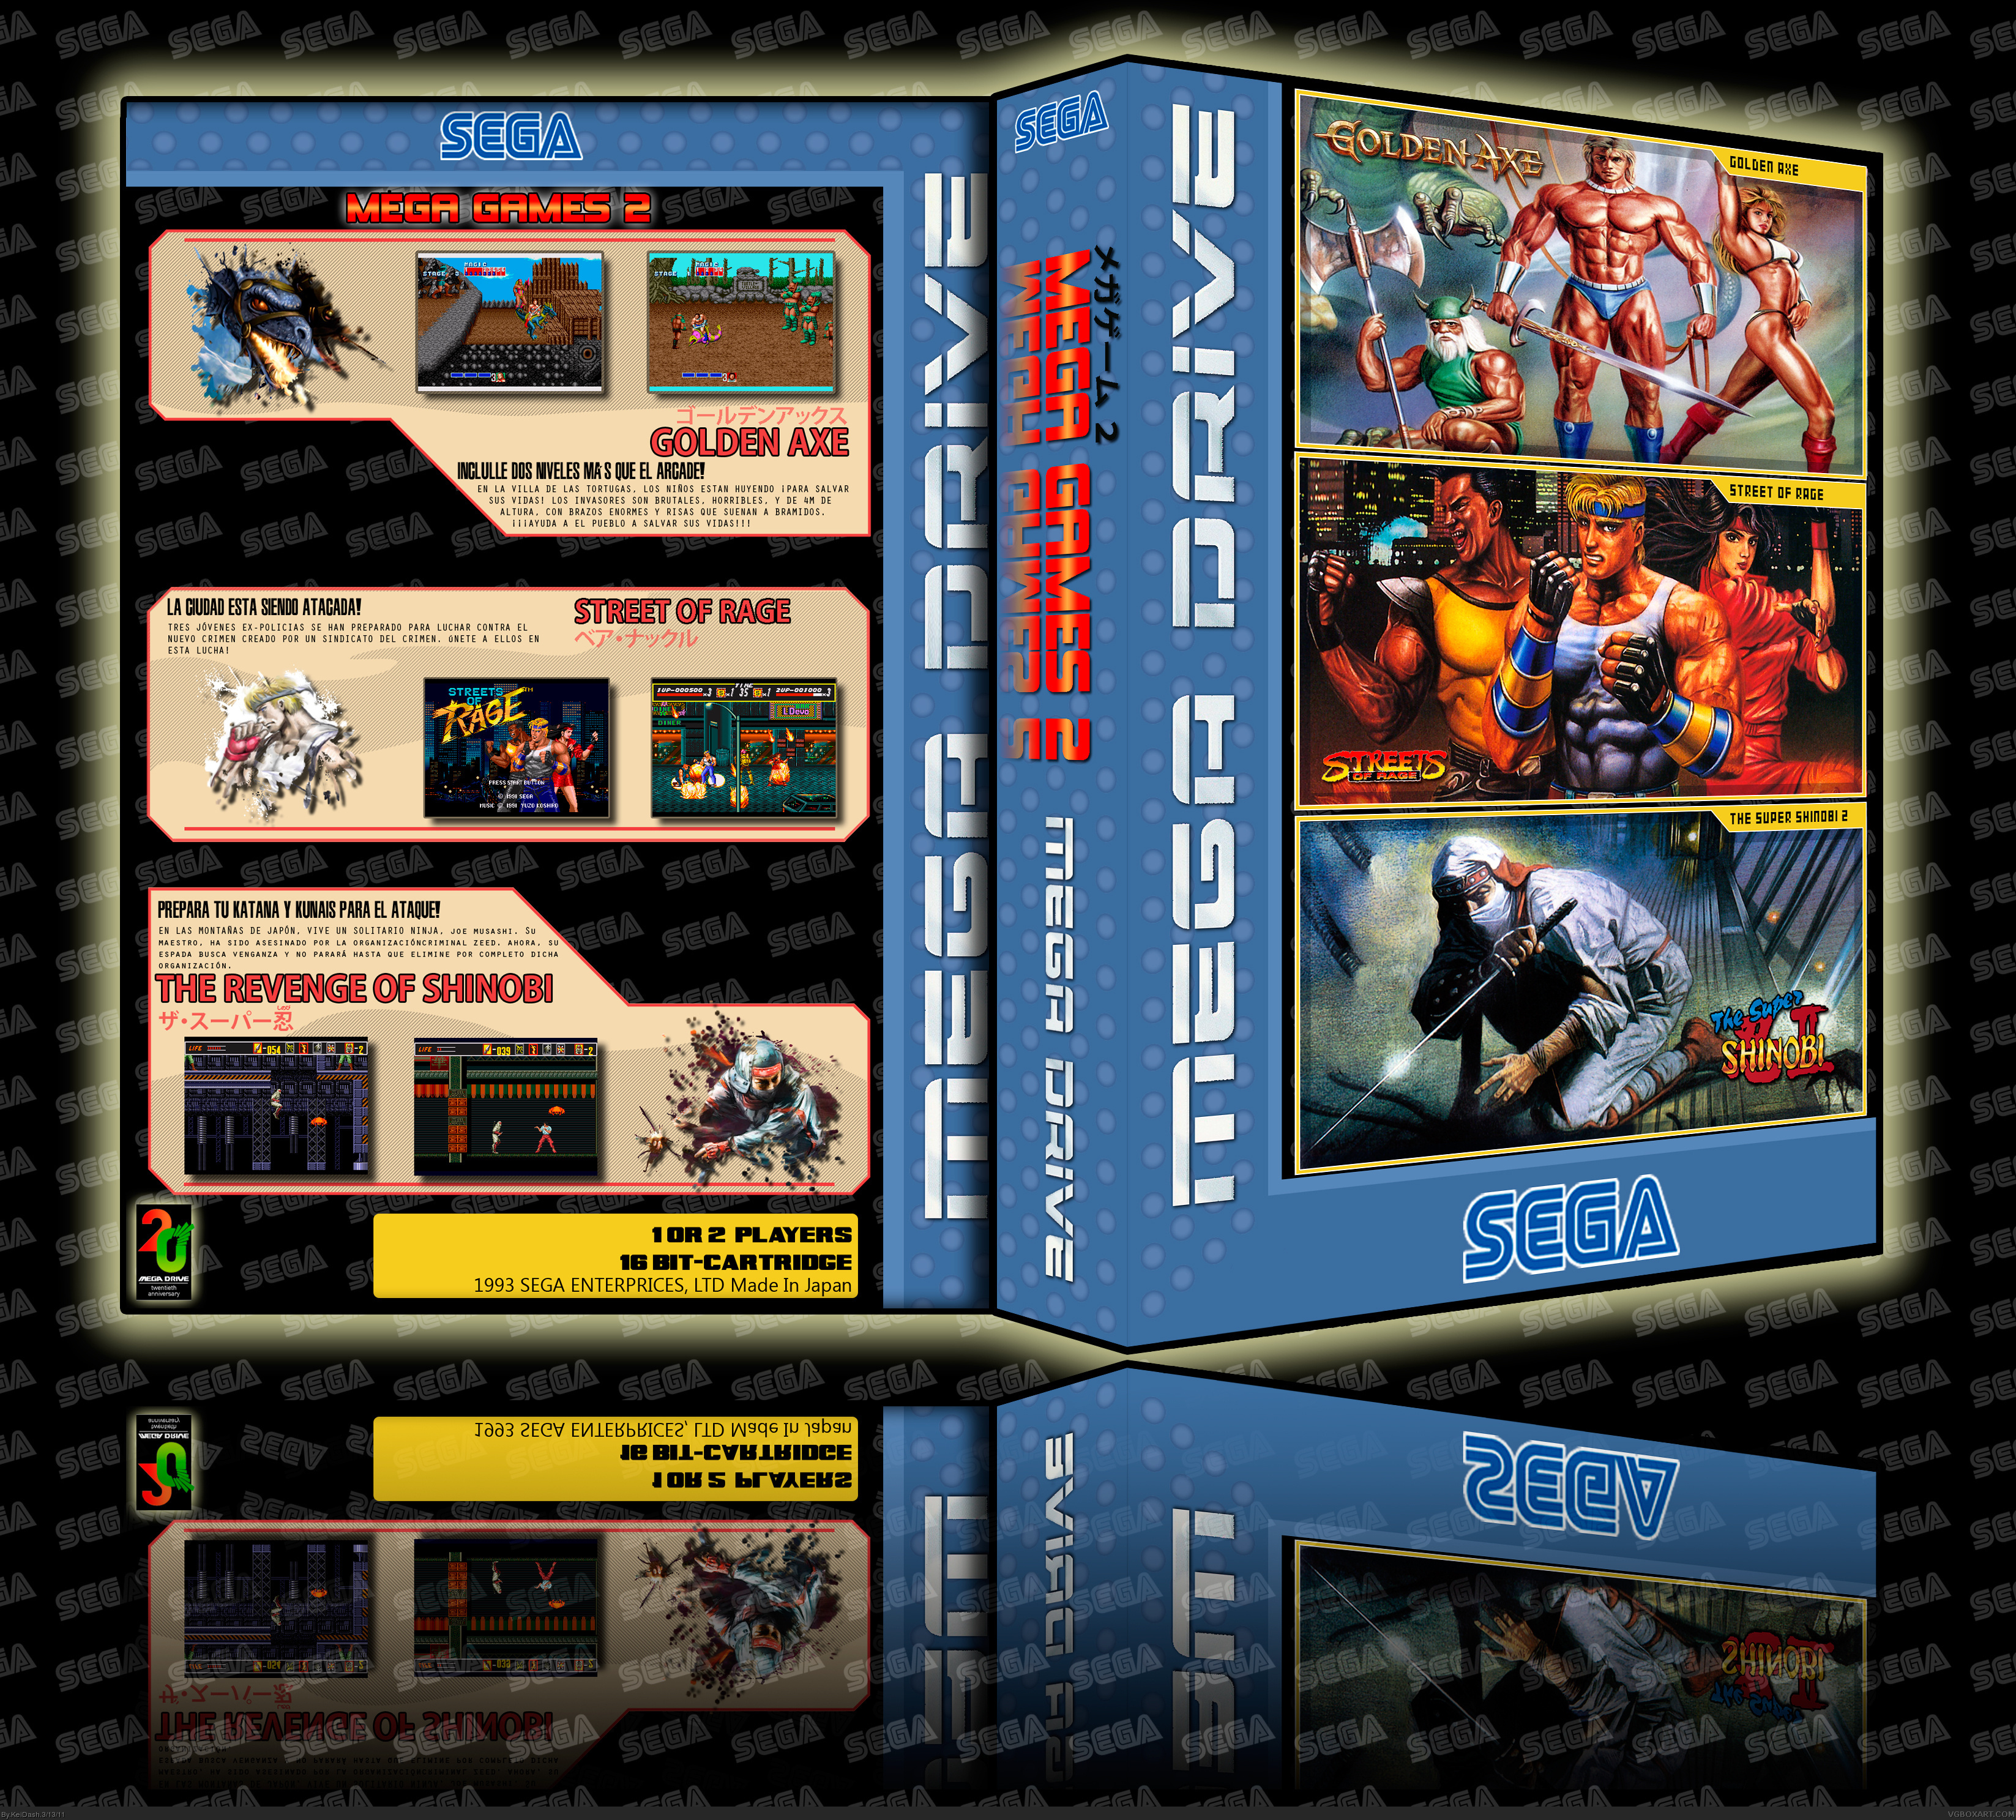 Mega Games 2 box cover